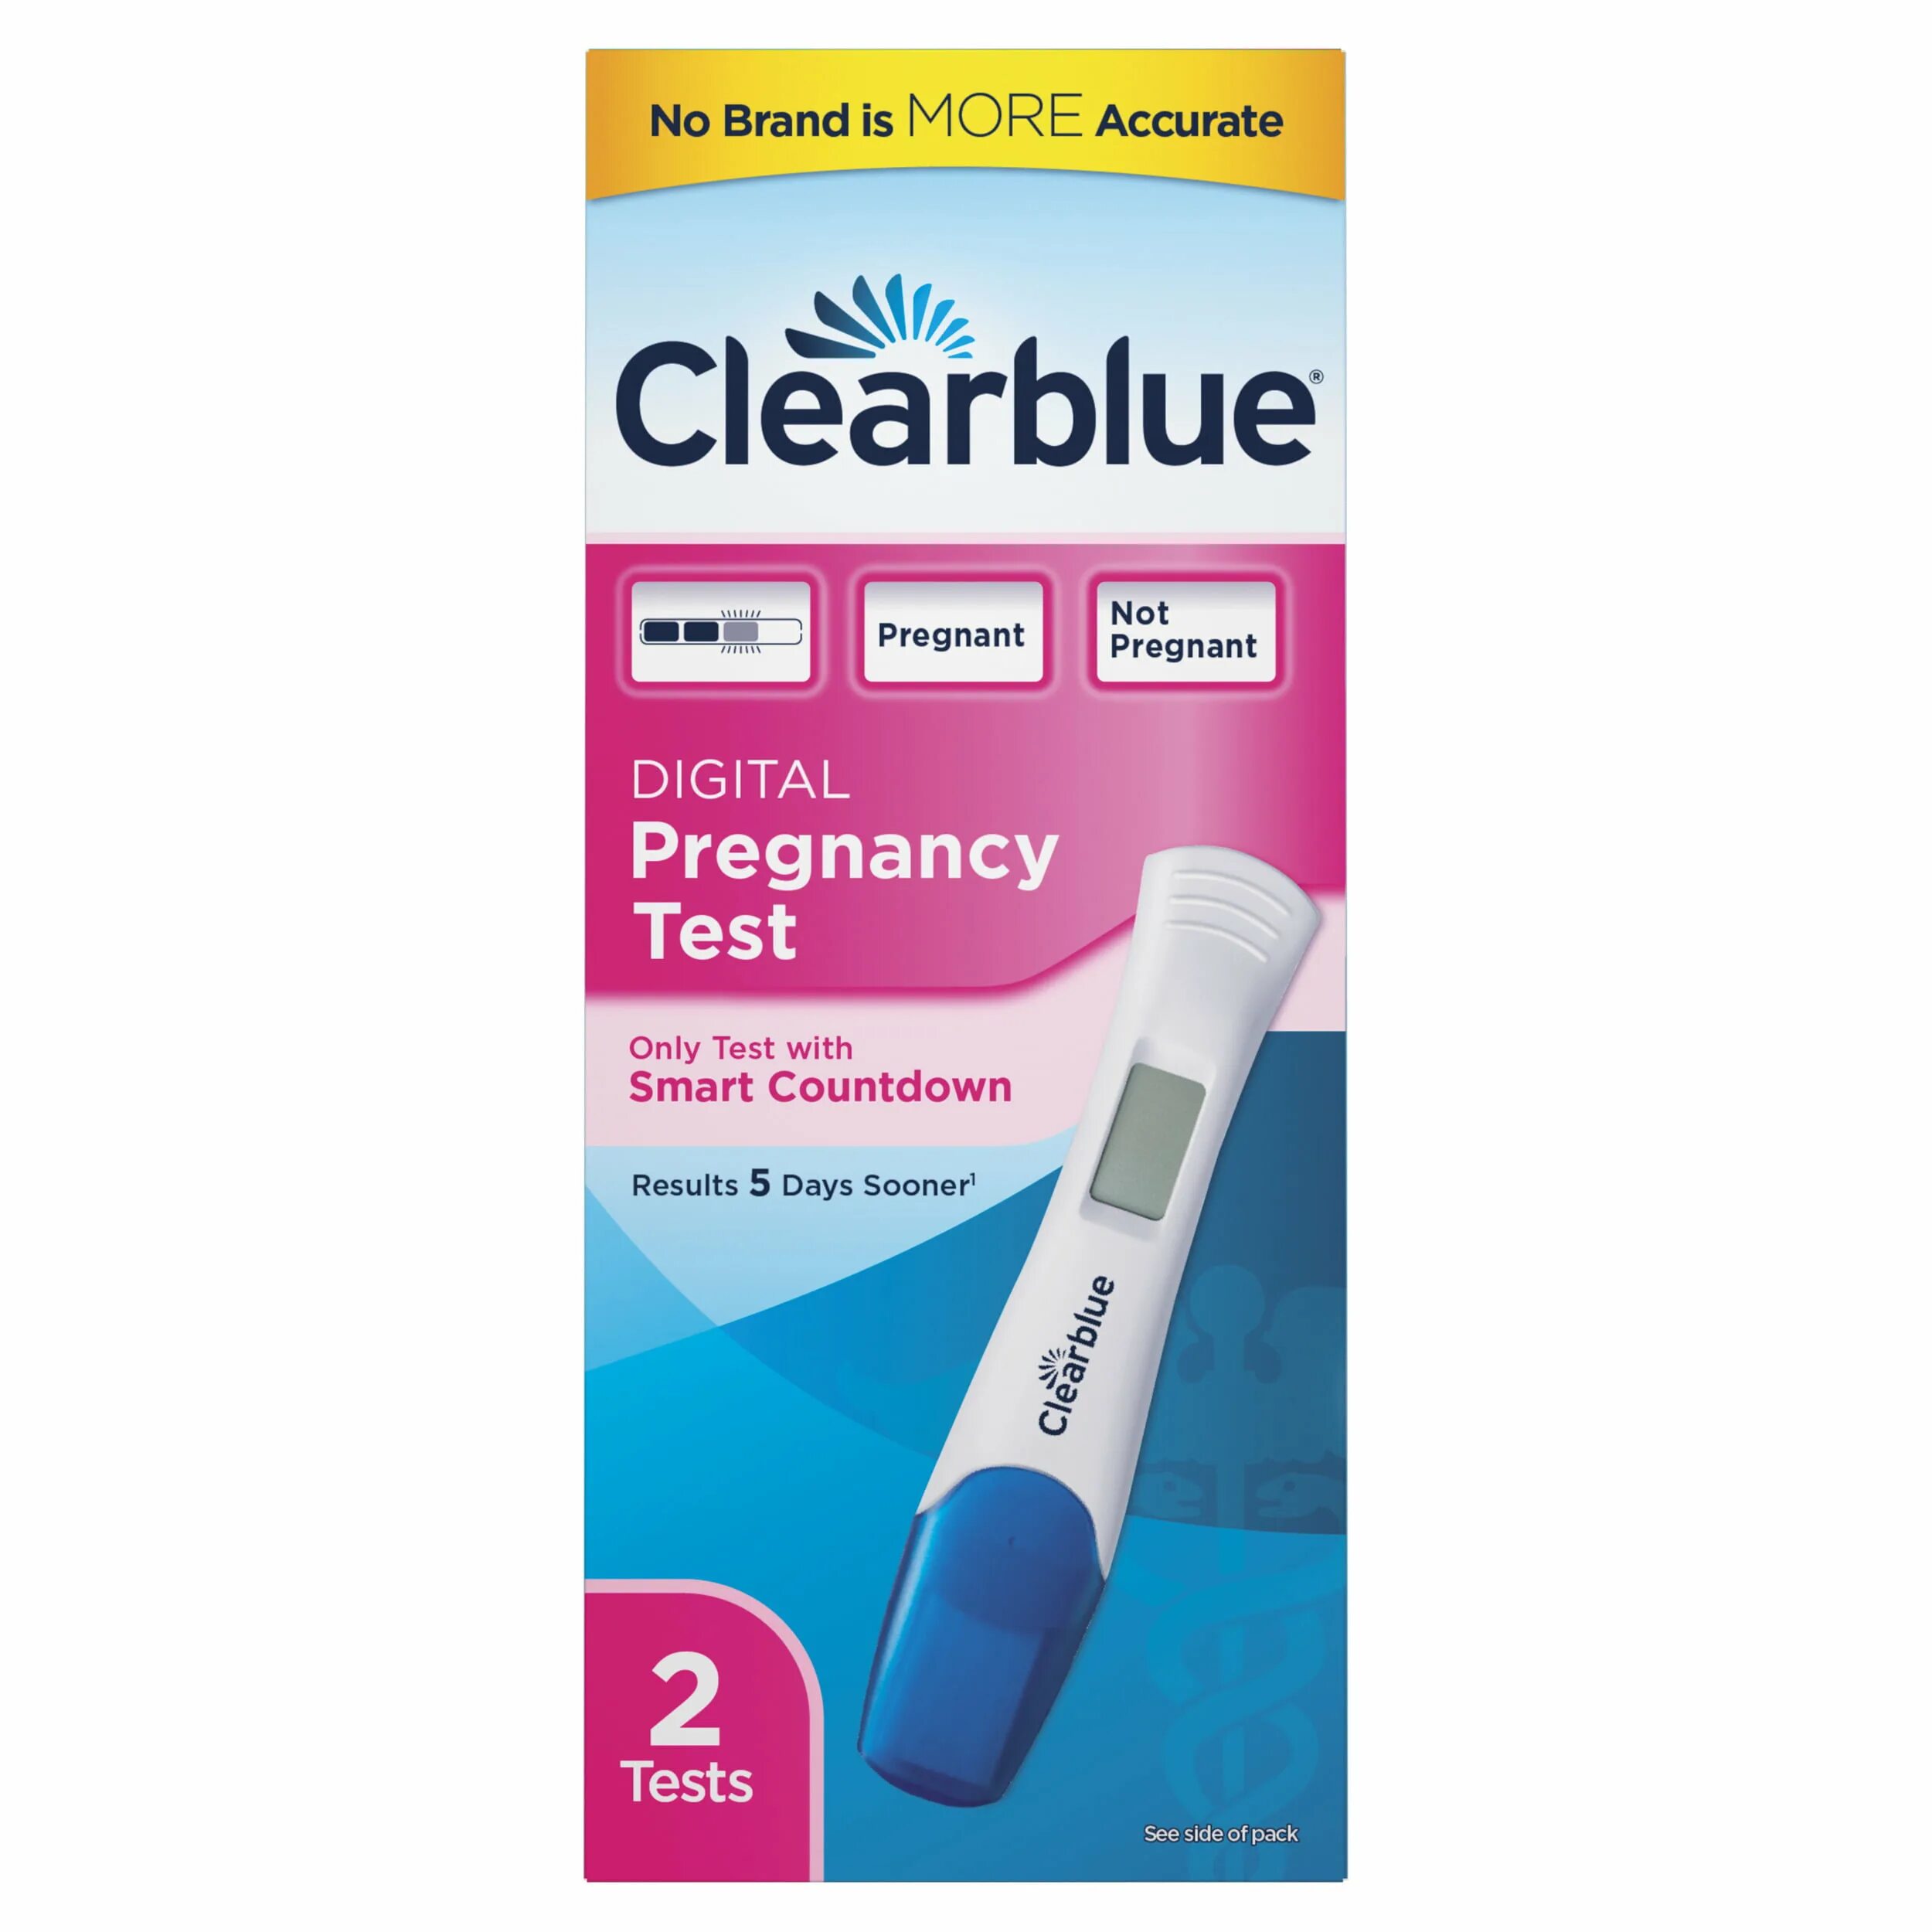 Цифровой тест отзывы. Цифровой тест на беременность Clearblue. Цифровой тест Clearblue. Clearblue Digital тест на беременность цифровой. Clearblue тест на беременность 2шт.